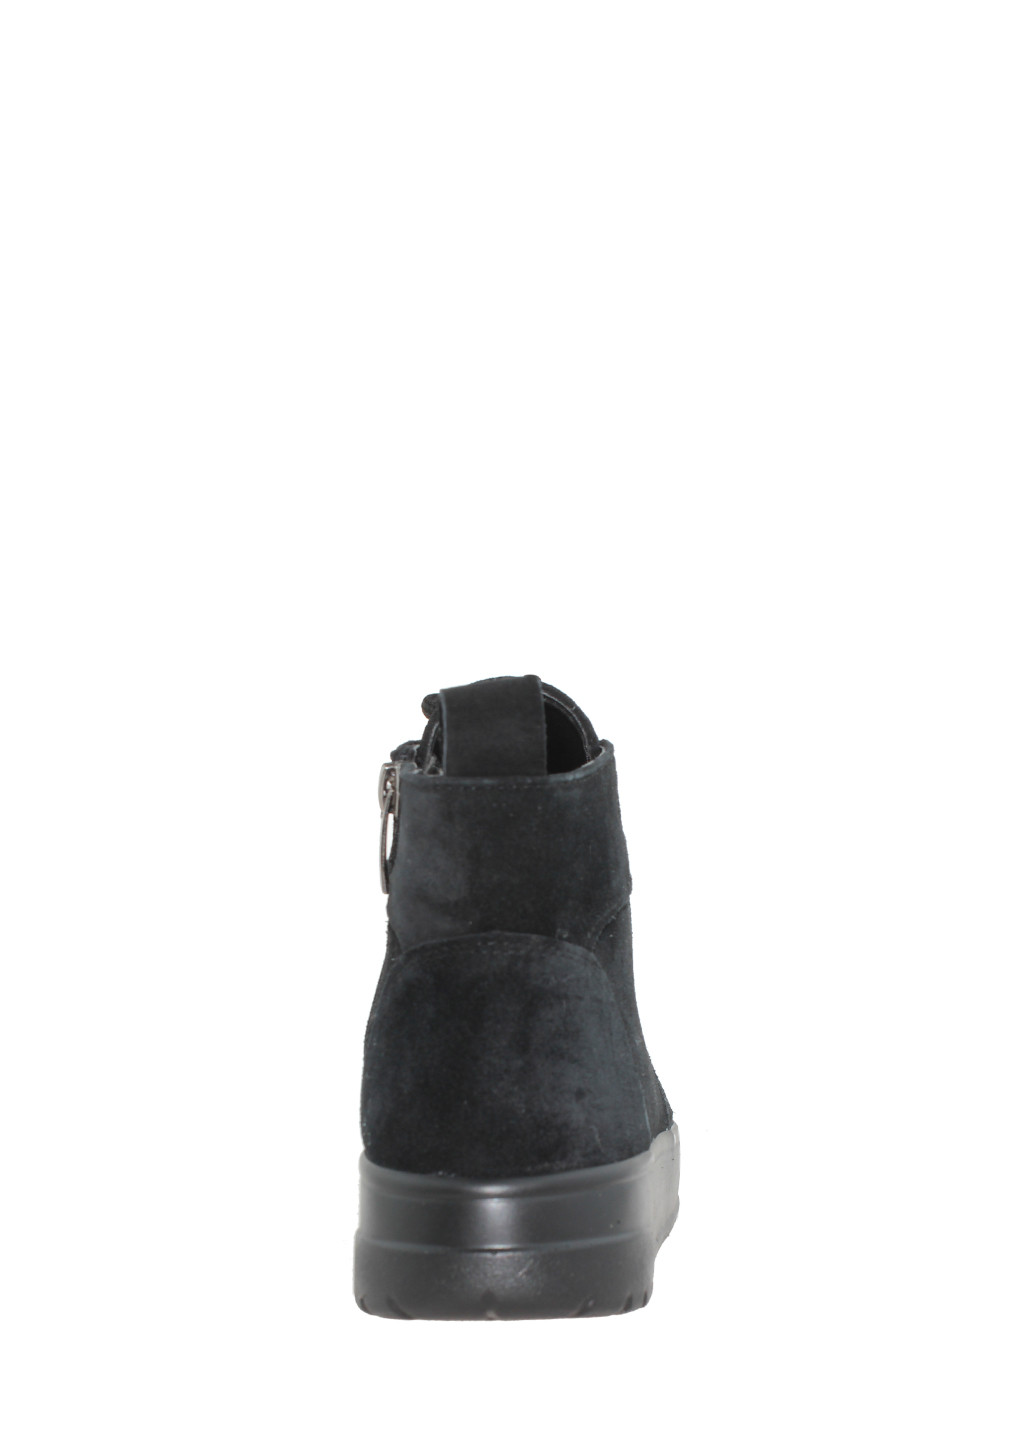 Осенние ботинки a-105-11 черный Alvista из натуральной замши